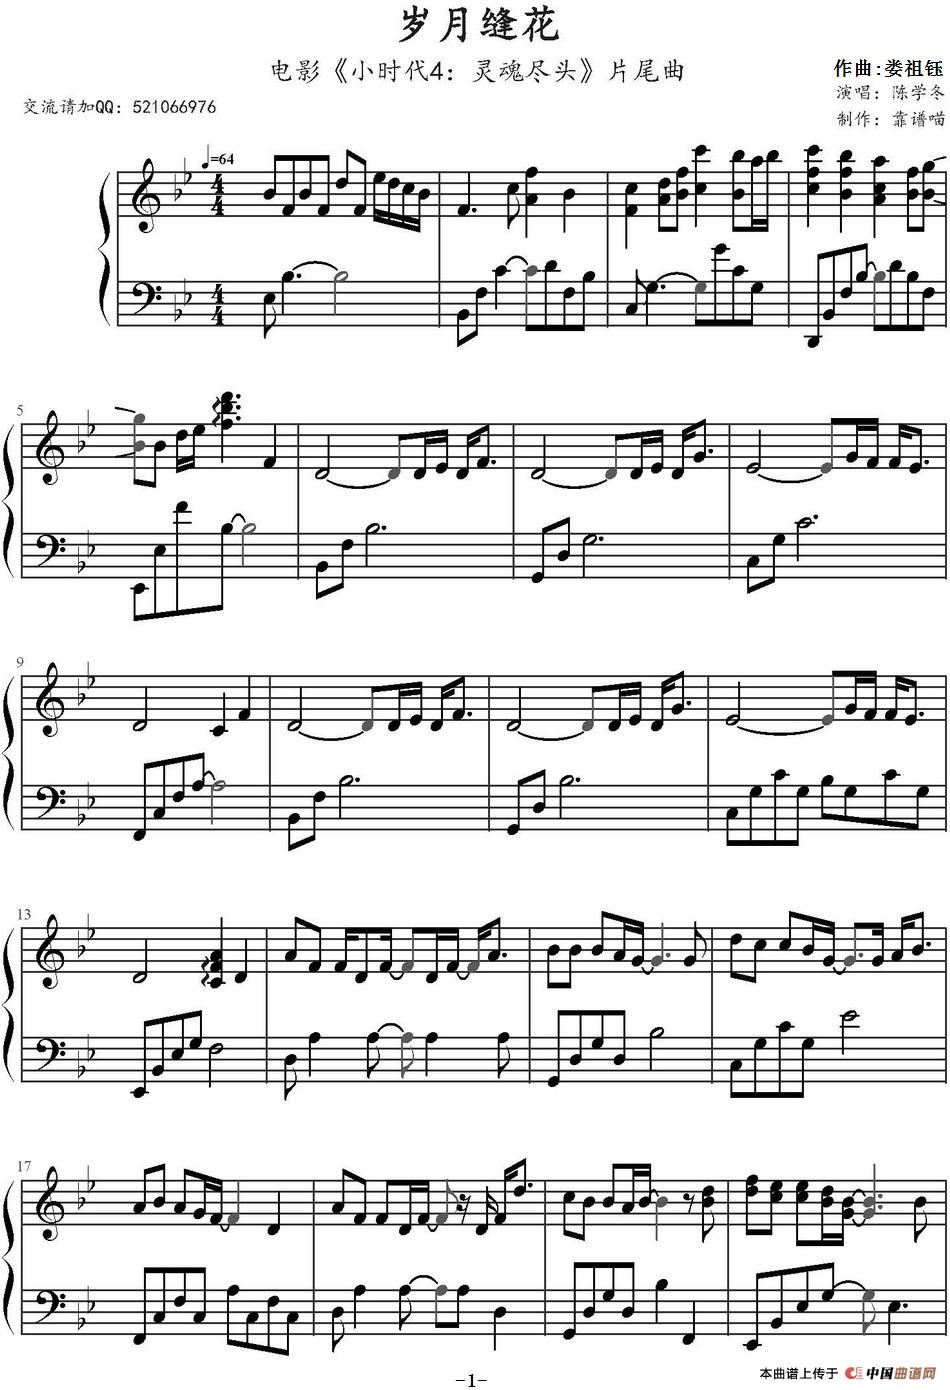 《岁月缝花》钢琴曲谱图分享